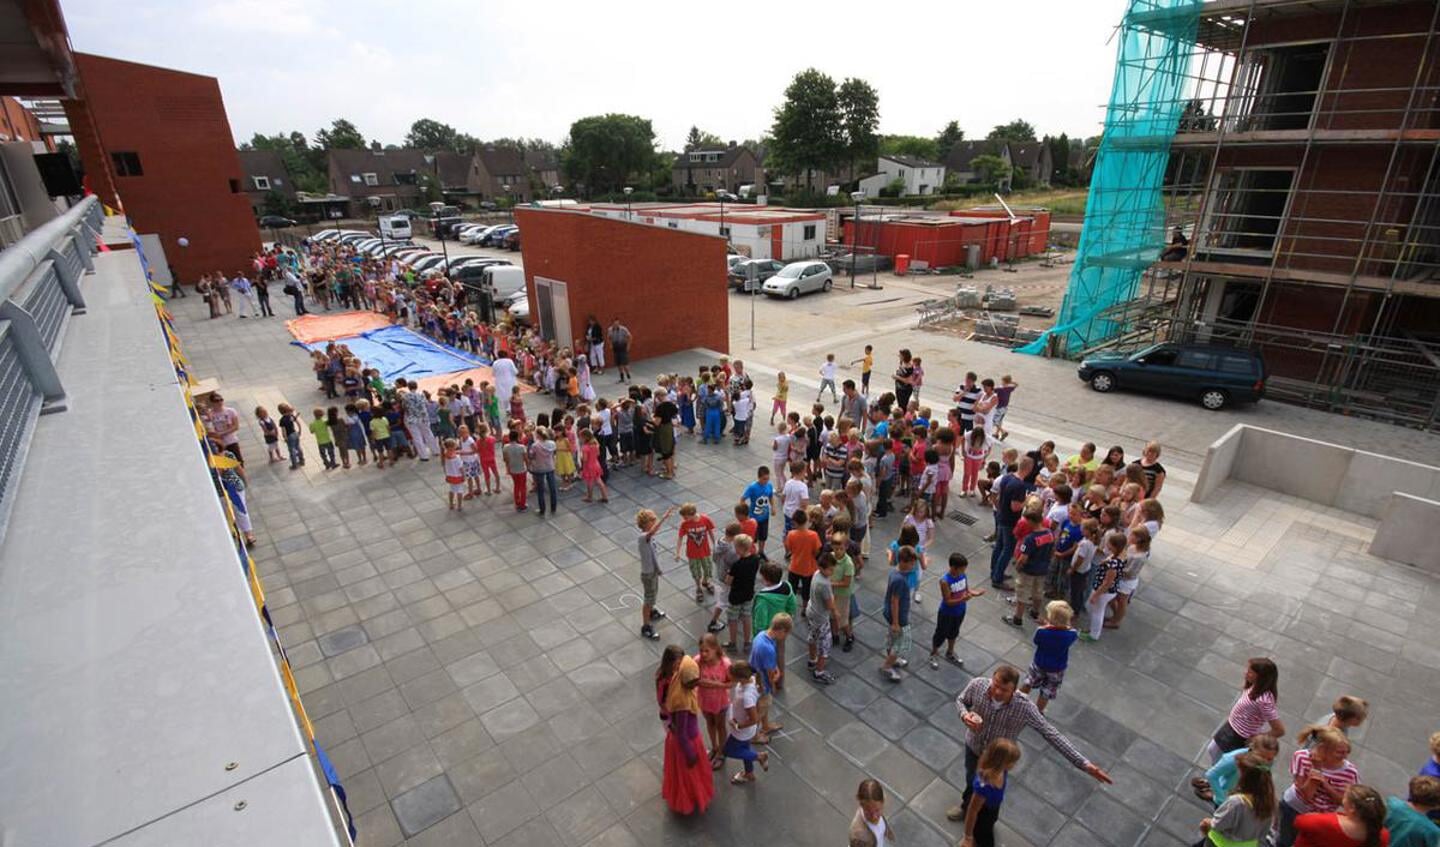 Basisscholen De Springplank en de Wegwijzer beginnen het schooljaar een fonkelnieuw schoolgebouw. foto Erik Eggens